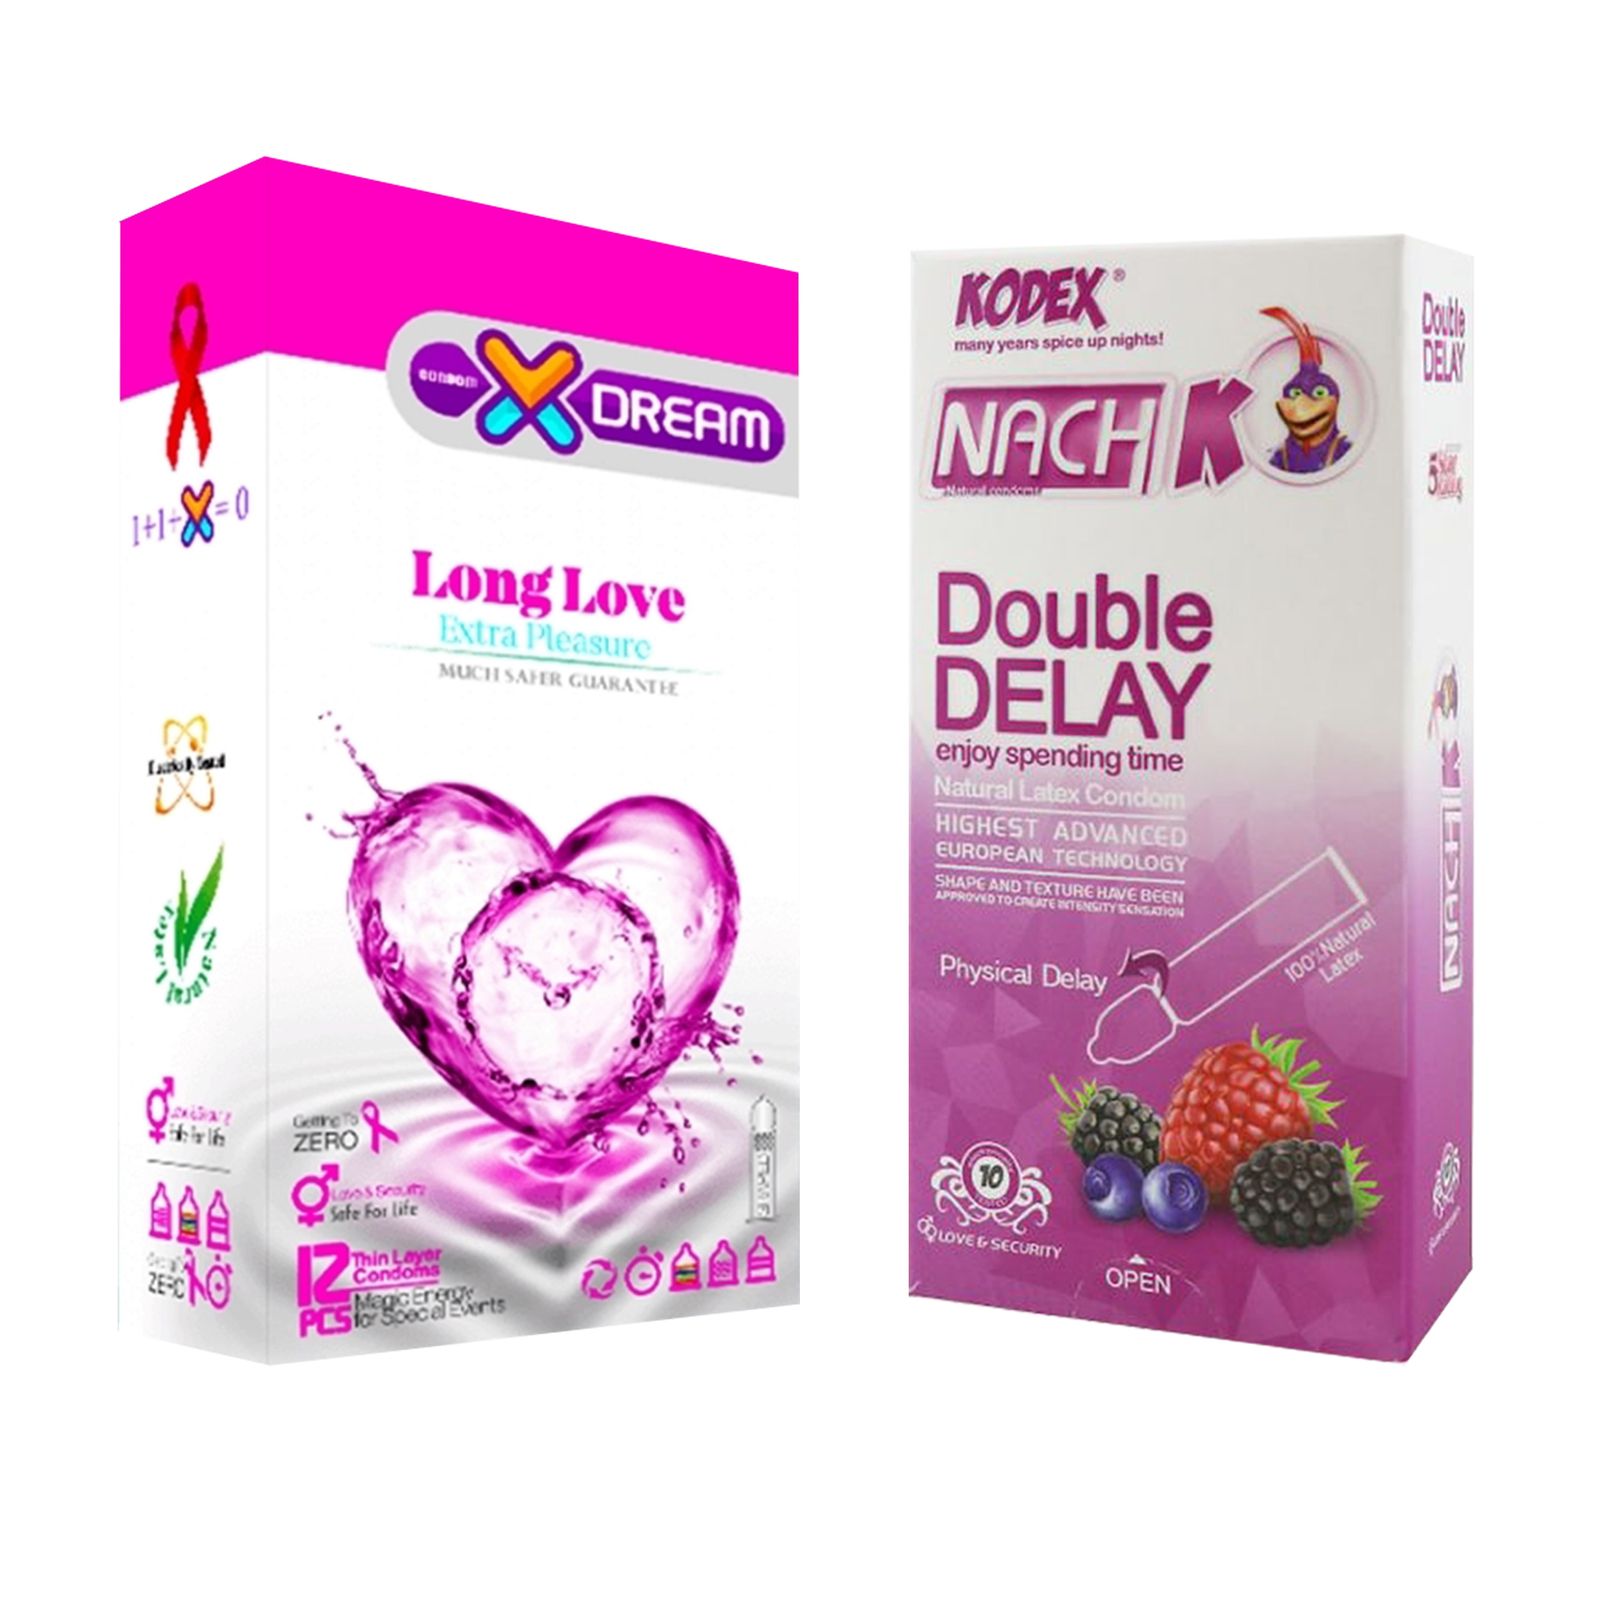 کاندوم ایکس دریم مدل Long Love بسته 12 عددی به همراه کاندوم تاخیری کدکس مدل Double Delay بسته 10 عددی